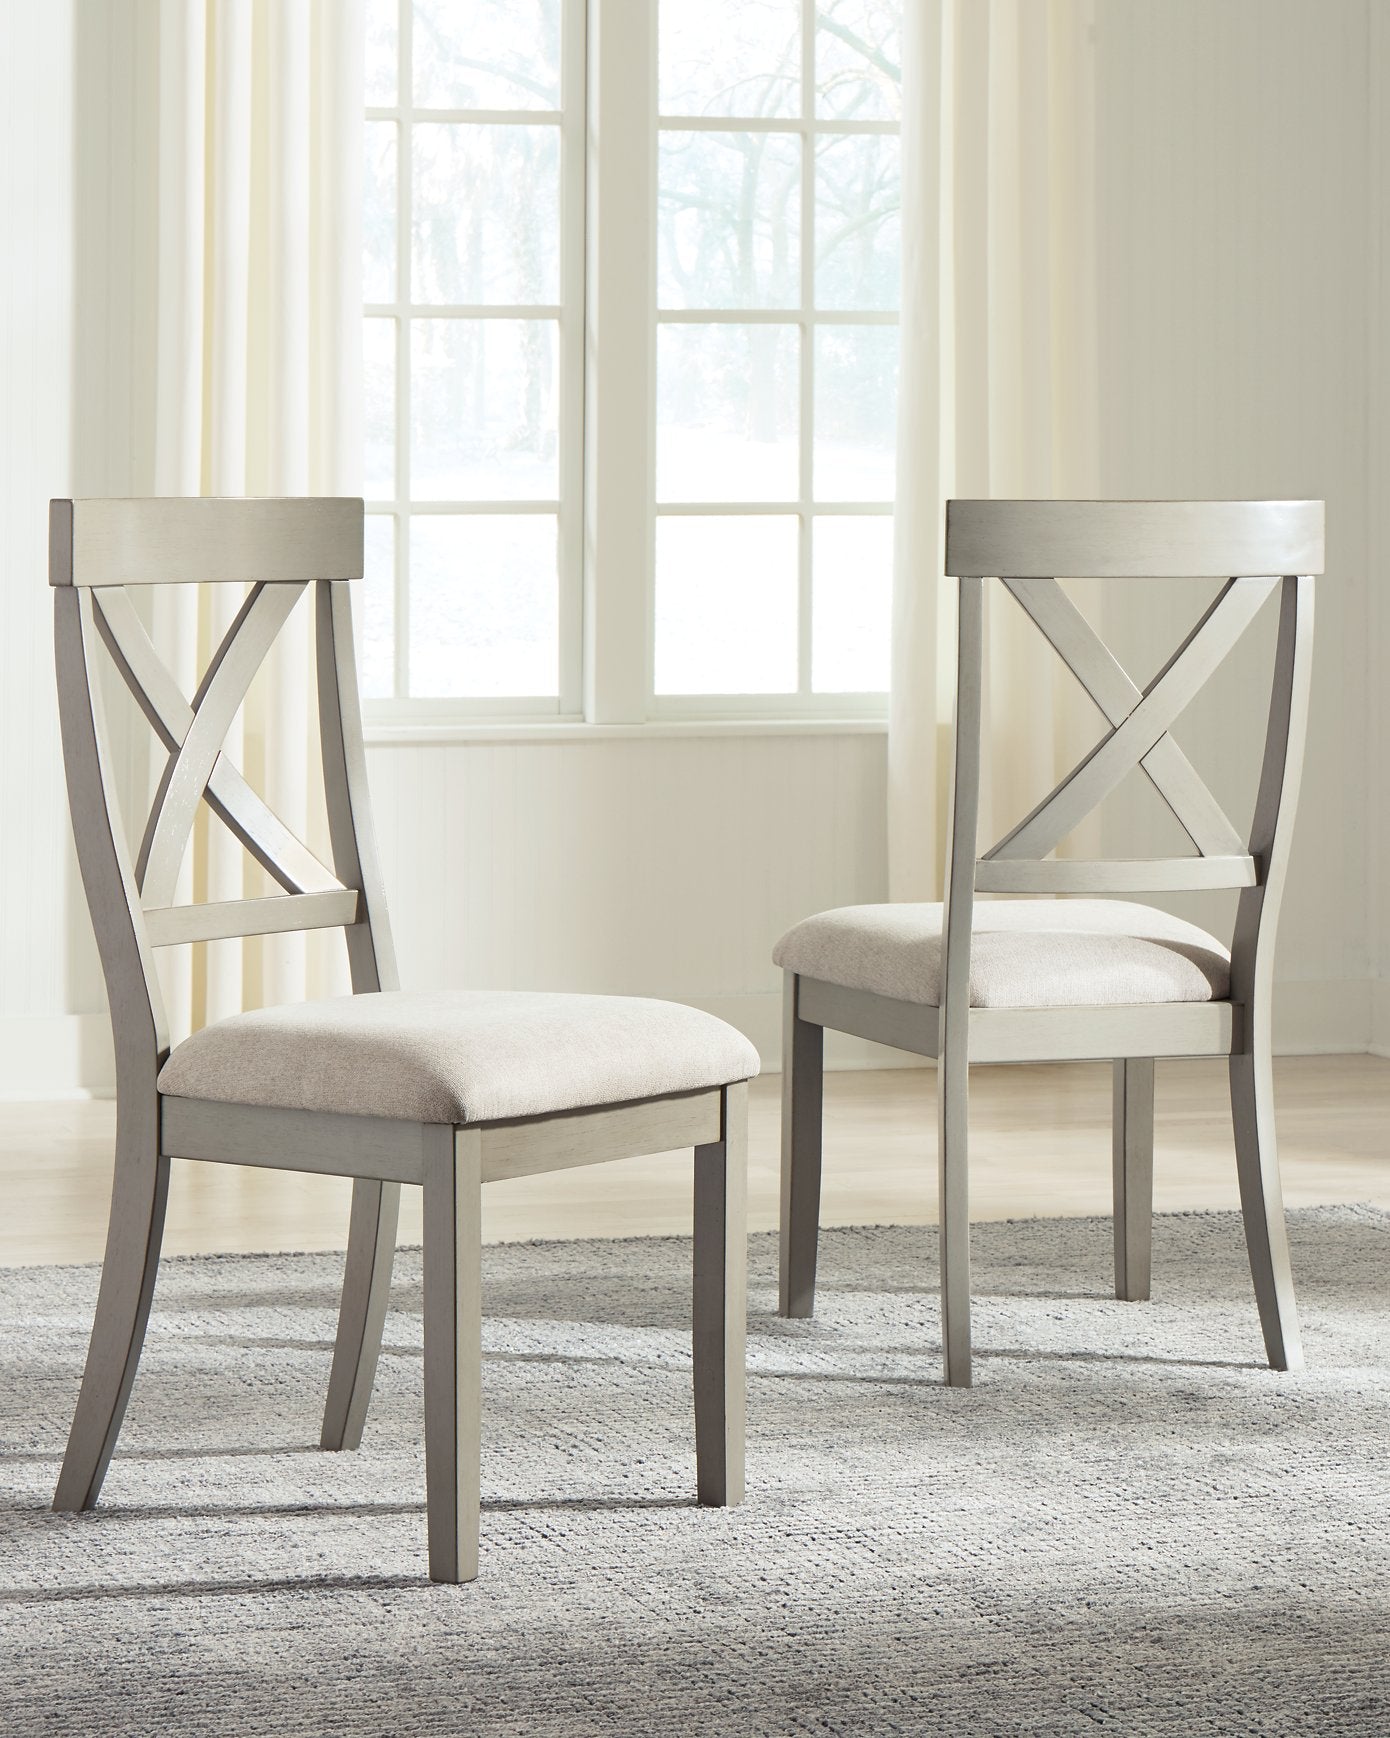 Parellen Dining Chair - Half Price Furniture